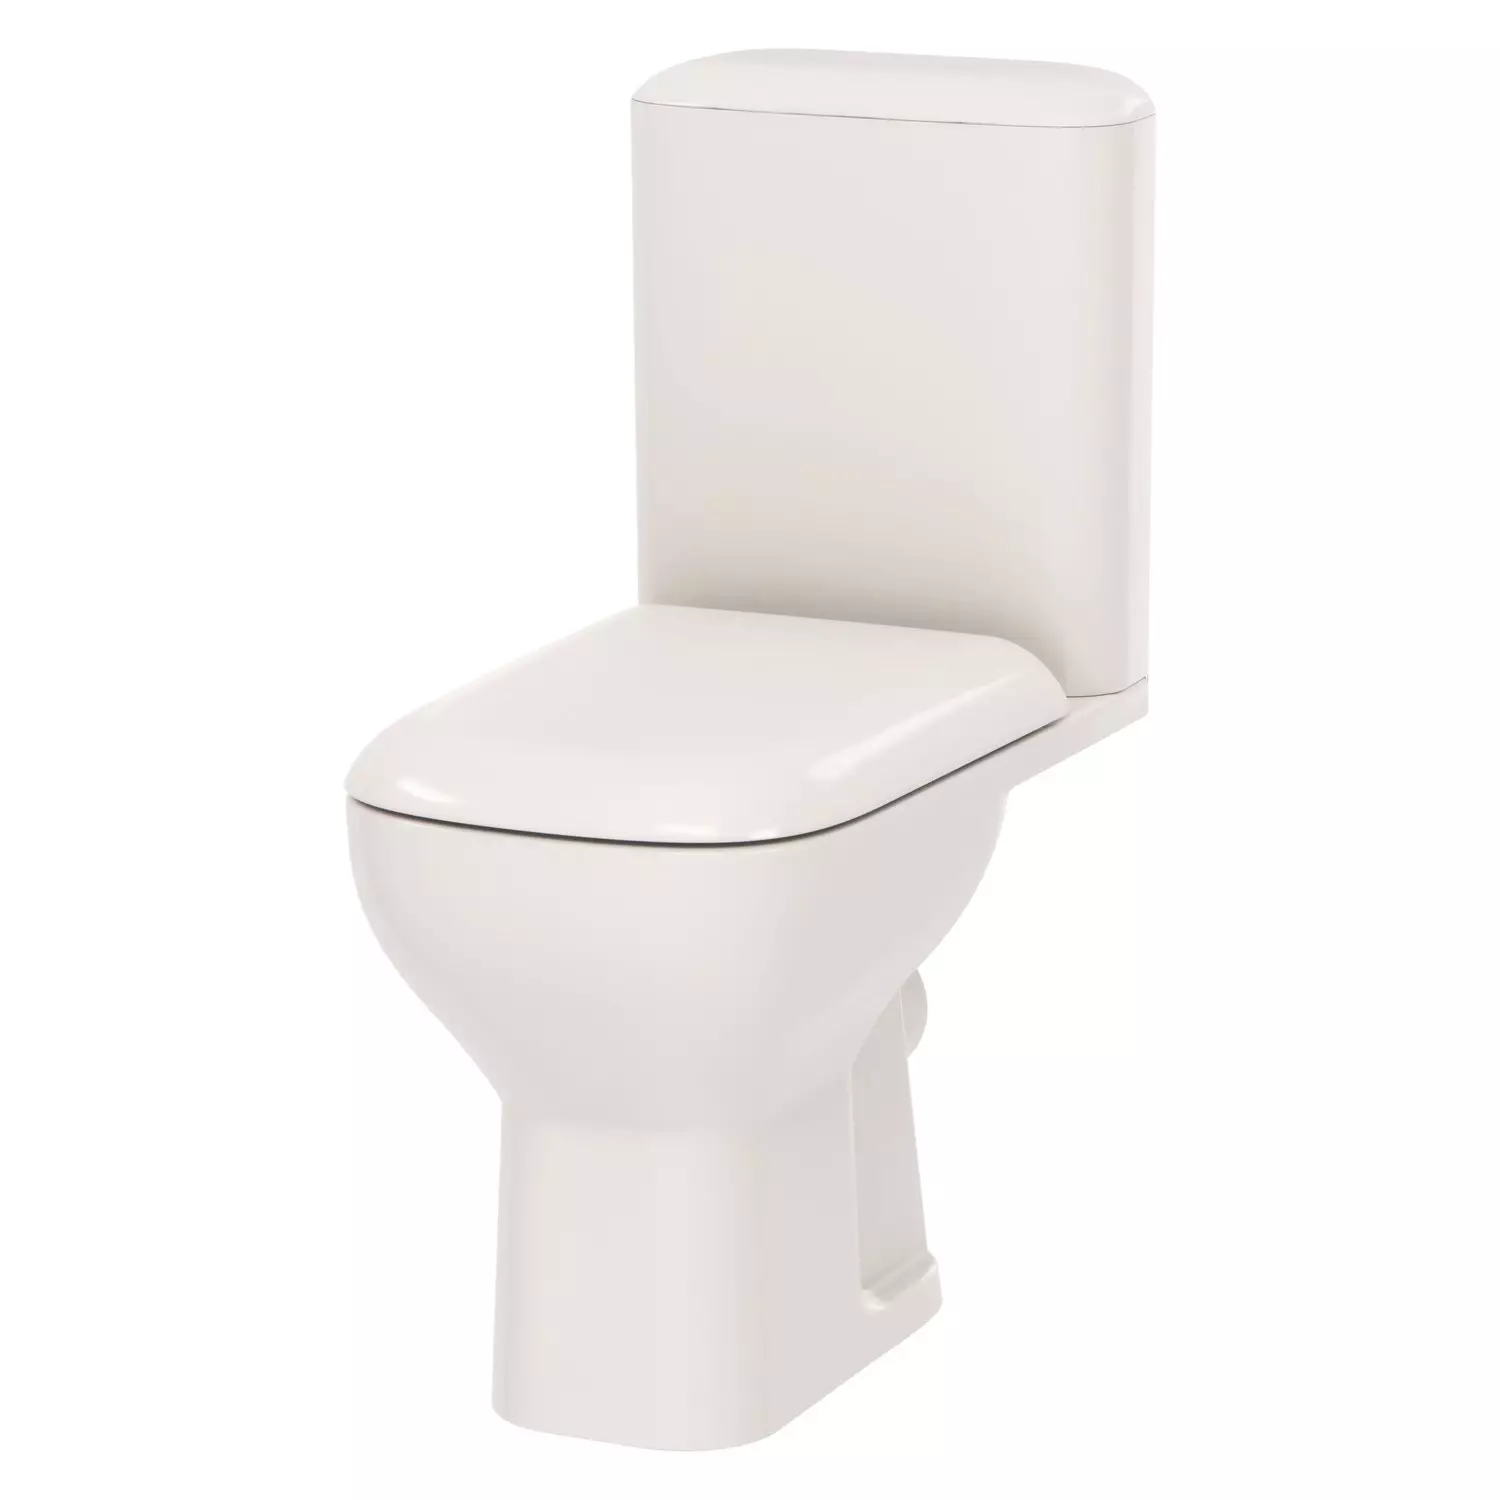 Am.pm tualetid: Suspension WC hüpata ja Gem Compact'i mudelite kirjeldus, Perekonnad ja Awe, Vaimu ja tabamuse, ülevaateid 10520_24